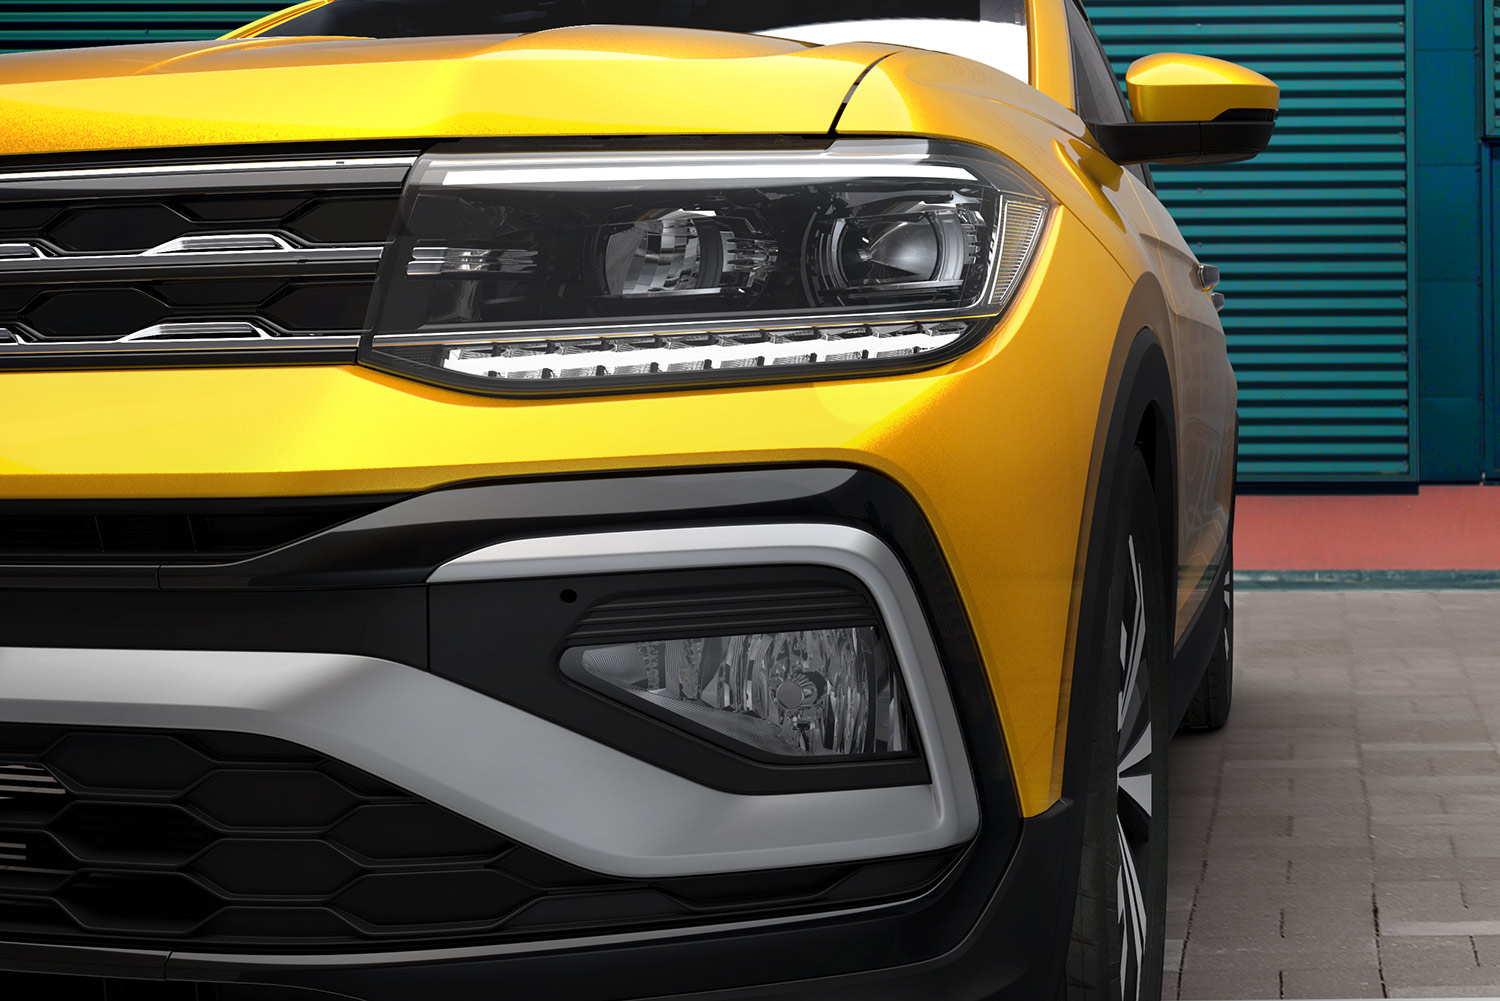 Volkswagen Nuevo T-Cross 2022 en México renovado diseño exterior frontal con faros LED y faros para niebla más prominentes